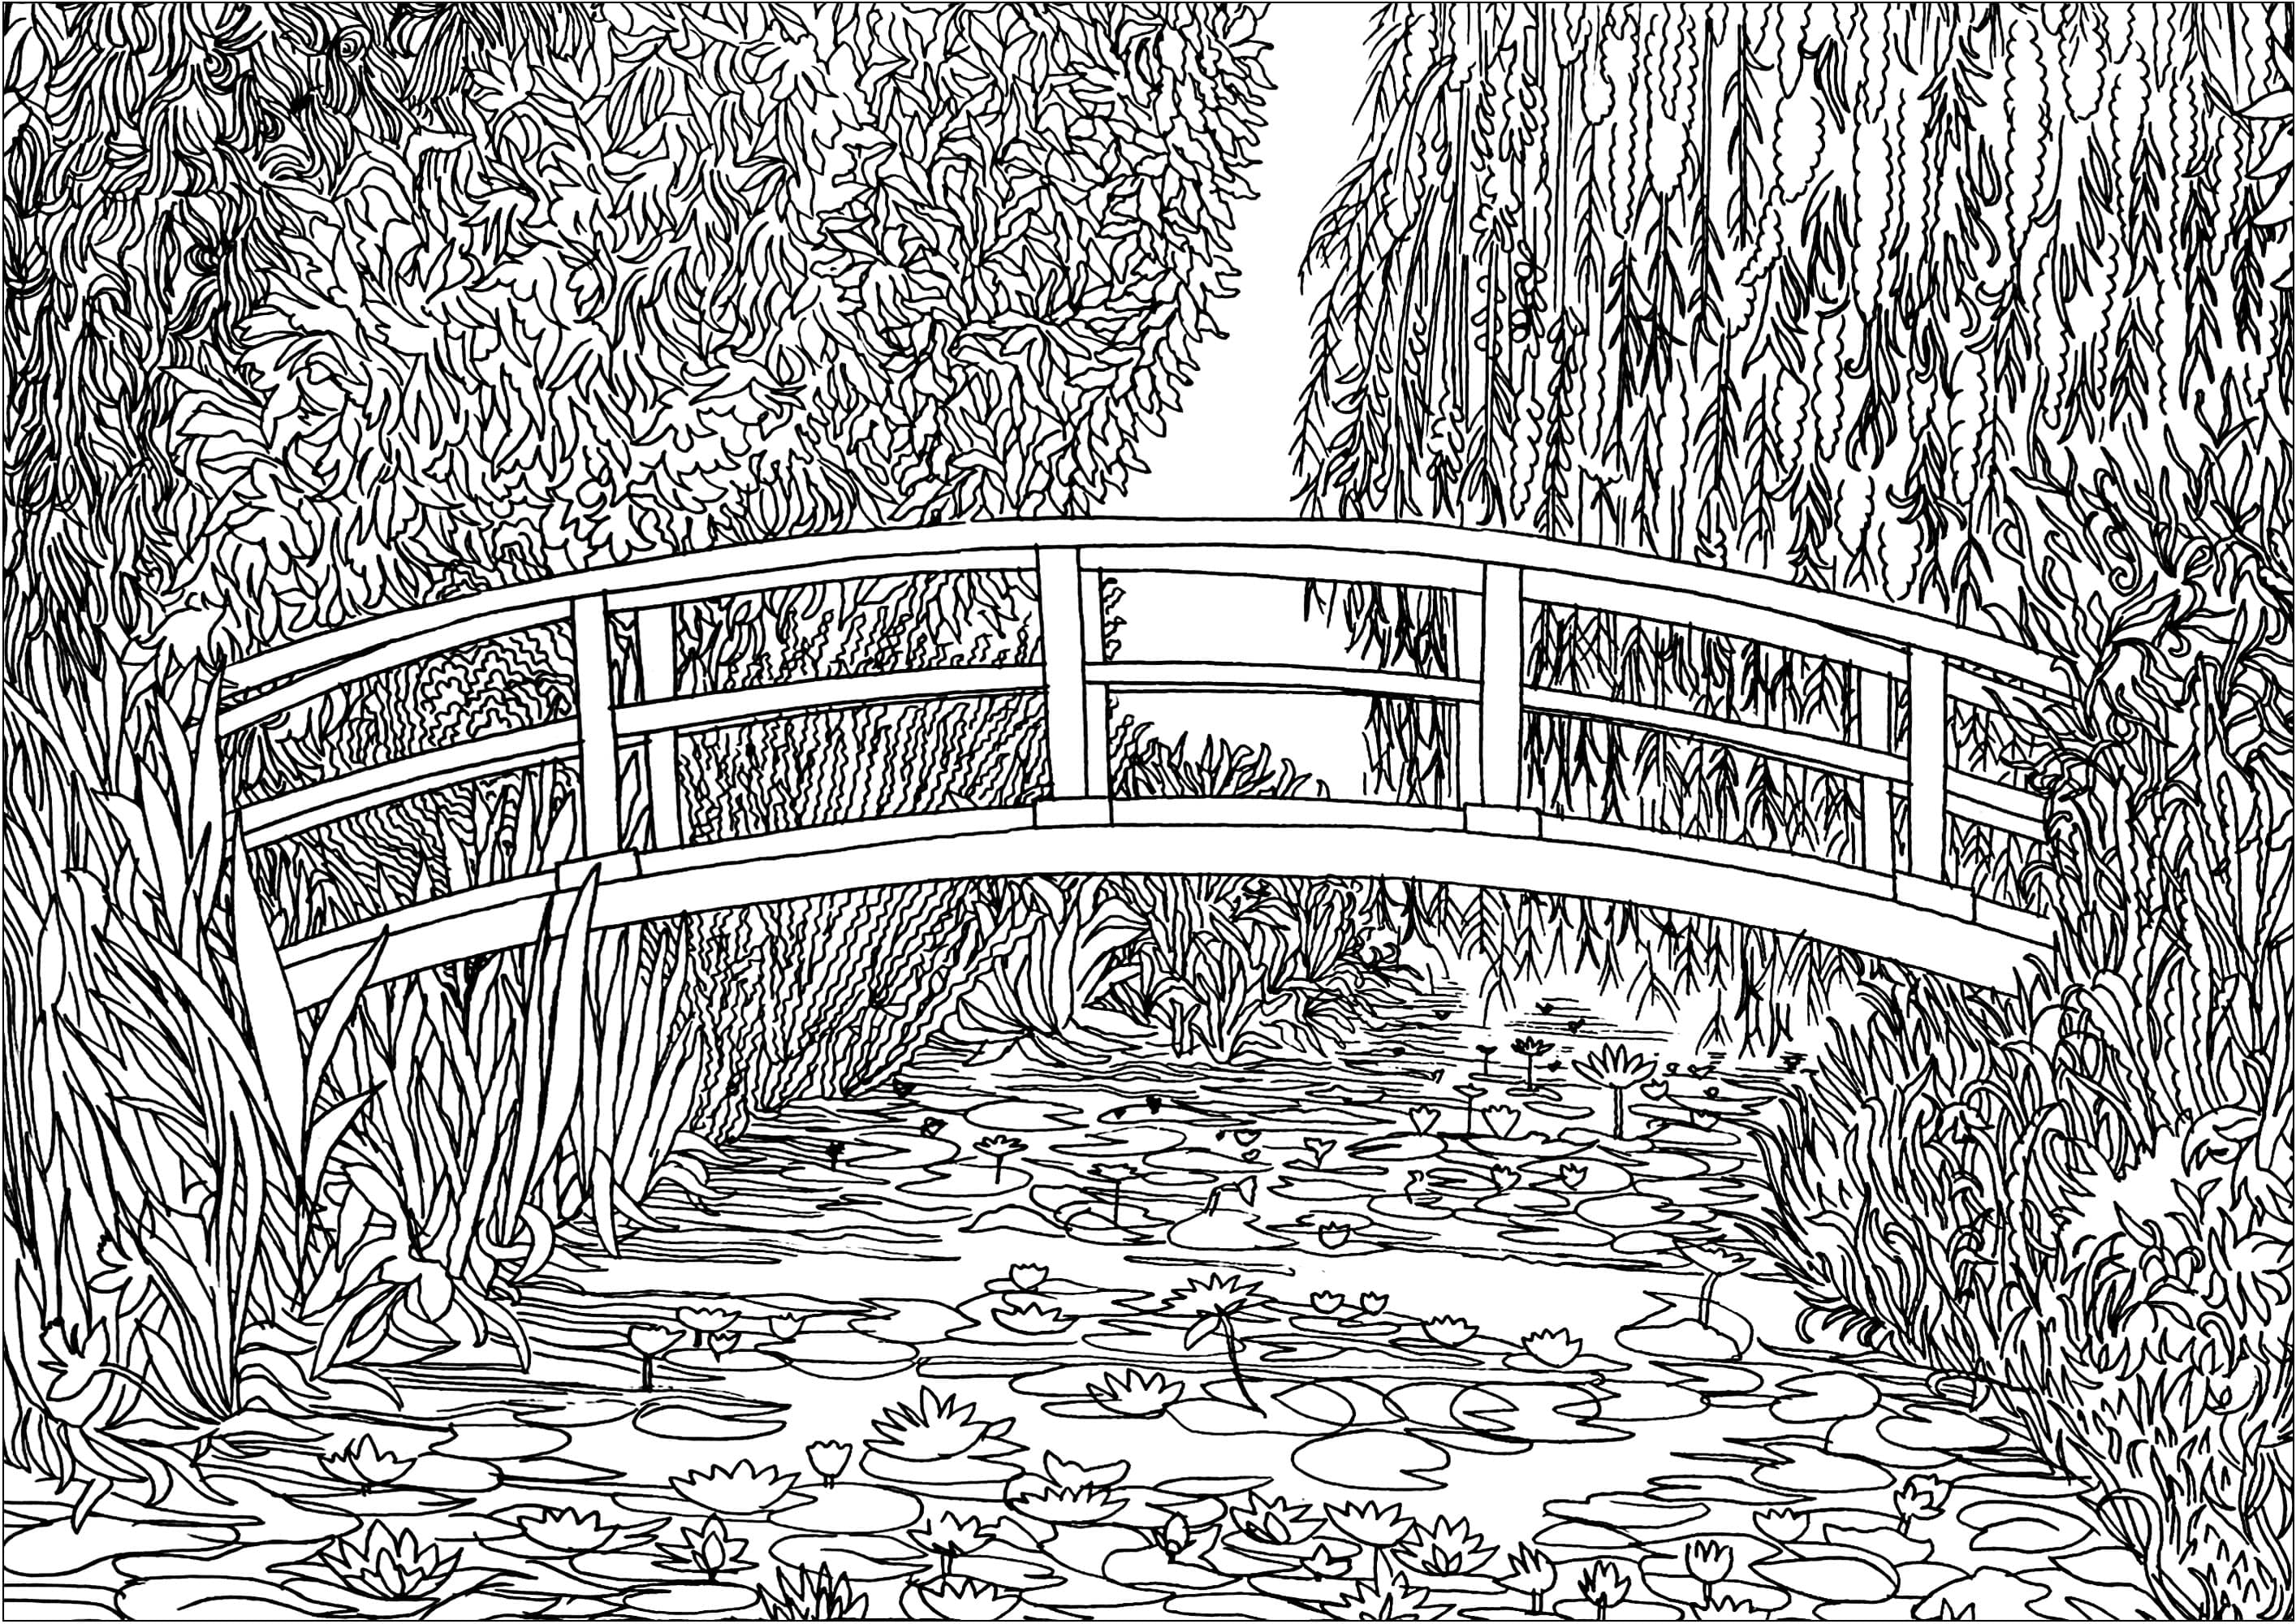 Colorazione basata su 'Le bassin aux nymphéas' (1899) di Claude Monet. Nel 1893, Monet, pittore ma anche appassionato di orticoltura, acquistò un appezzamento di terreno con uno stagno vicino alla sua proprietà di Giverny, con l'intenzione di costruire qualcosa 'per il piacere degli occhi e anche per motivi da dipingere'. Il risultato fu la serie di dipinti che raffiguravano questo magnifico stagno di ninfee.